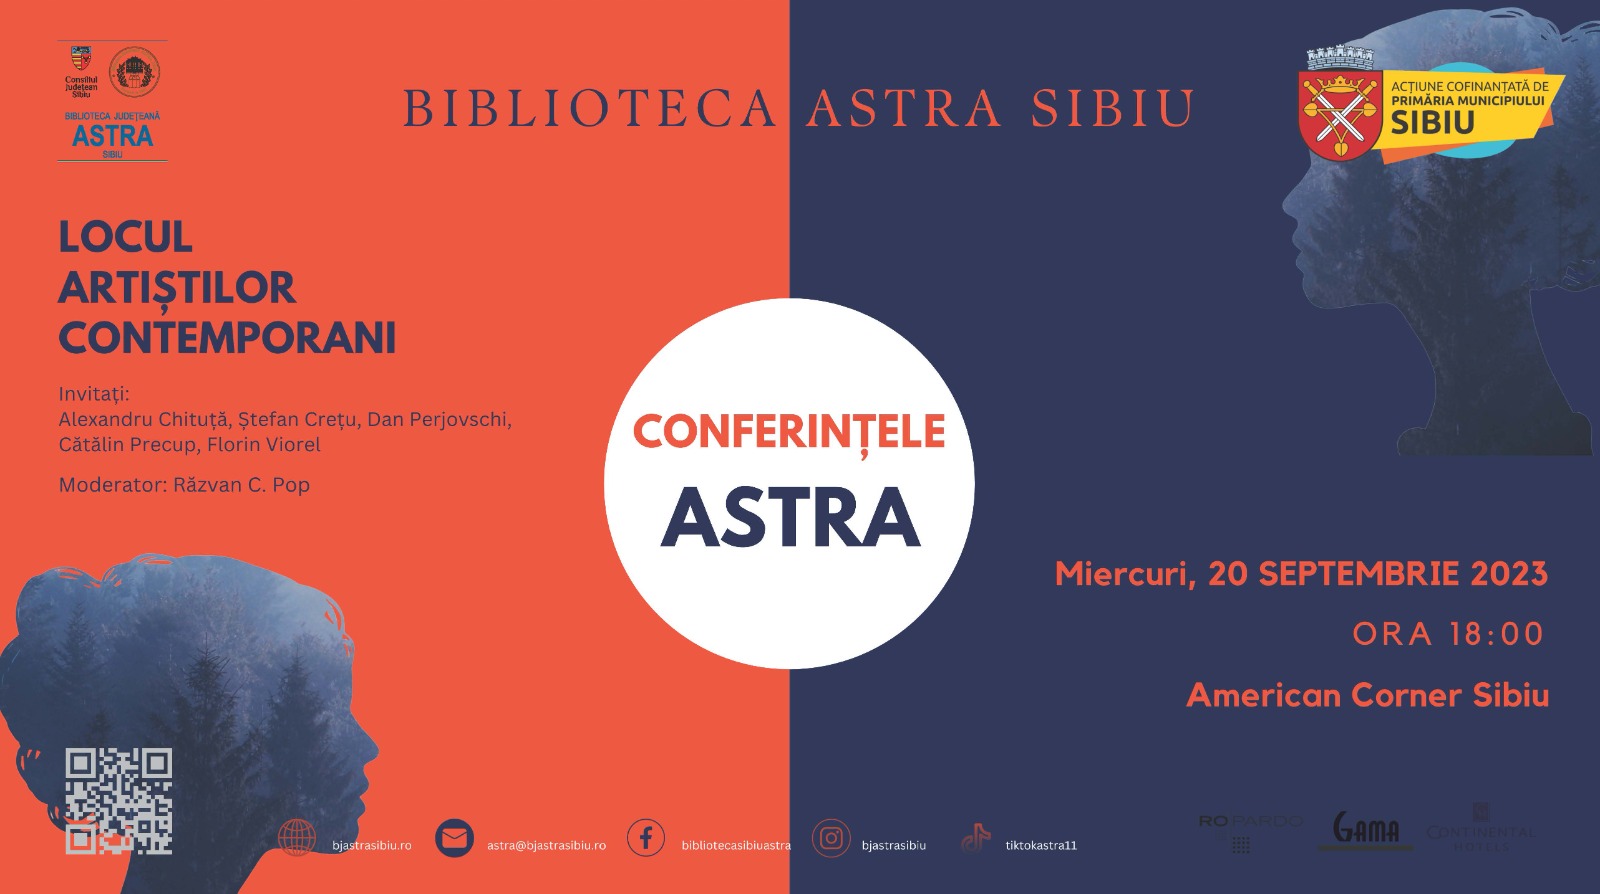 Conferințele Astra: cinci artiști sibieni vor discuta despre arta contemporană și rolul ei în societatea actuală